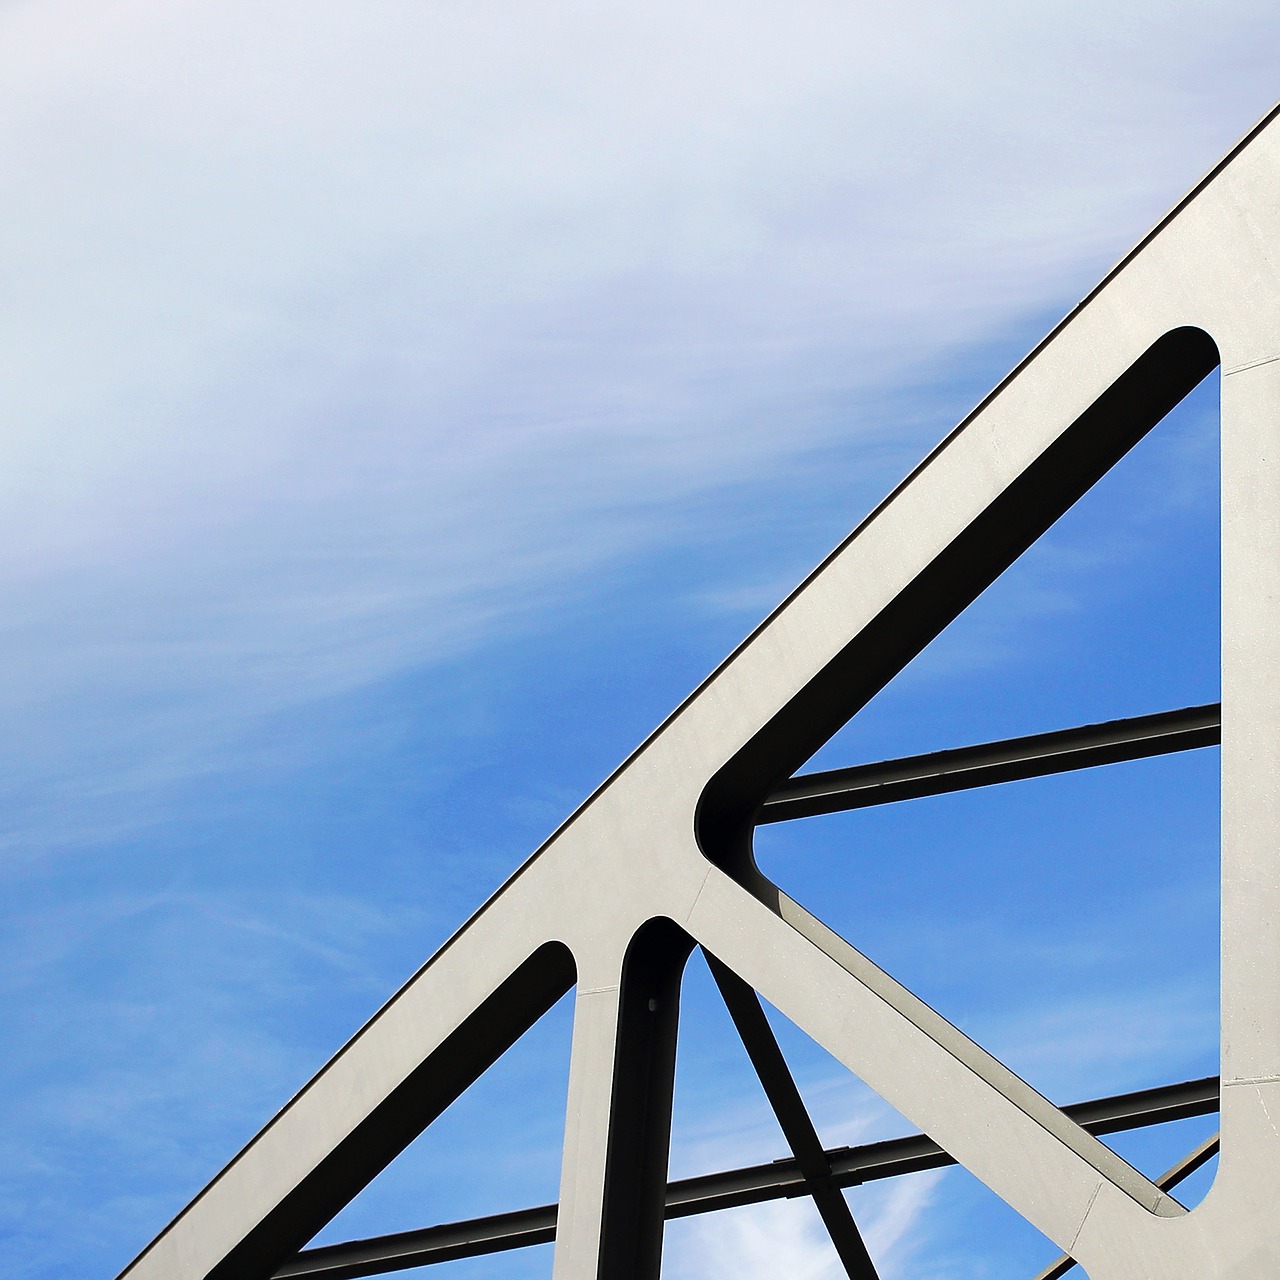 Image - bridge metal sky industrial shapes